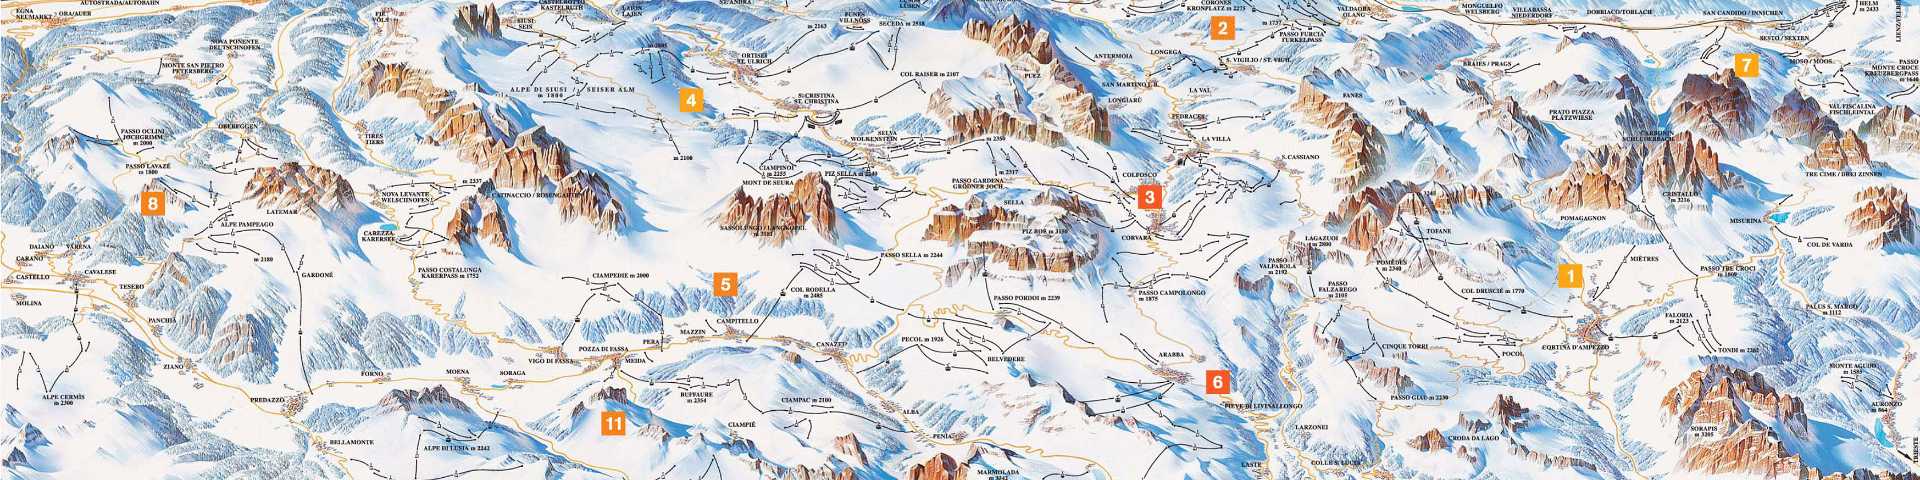 Доломити, бледе планине, скијашки рај: 1.300 километара с једним ски-пасом